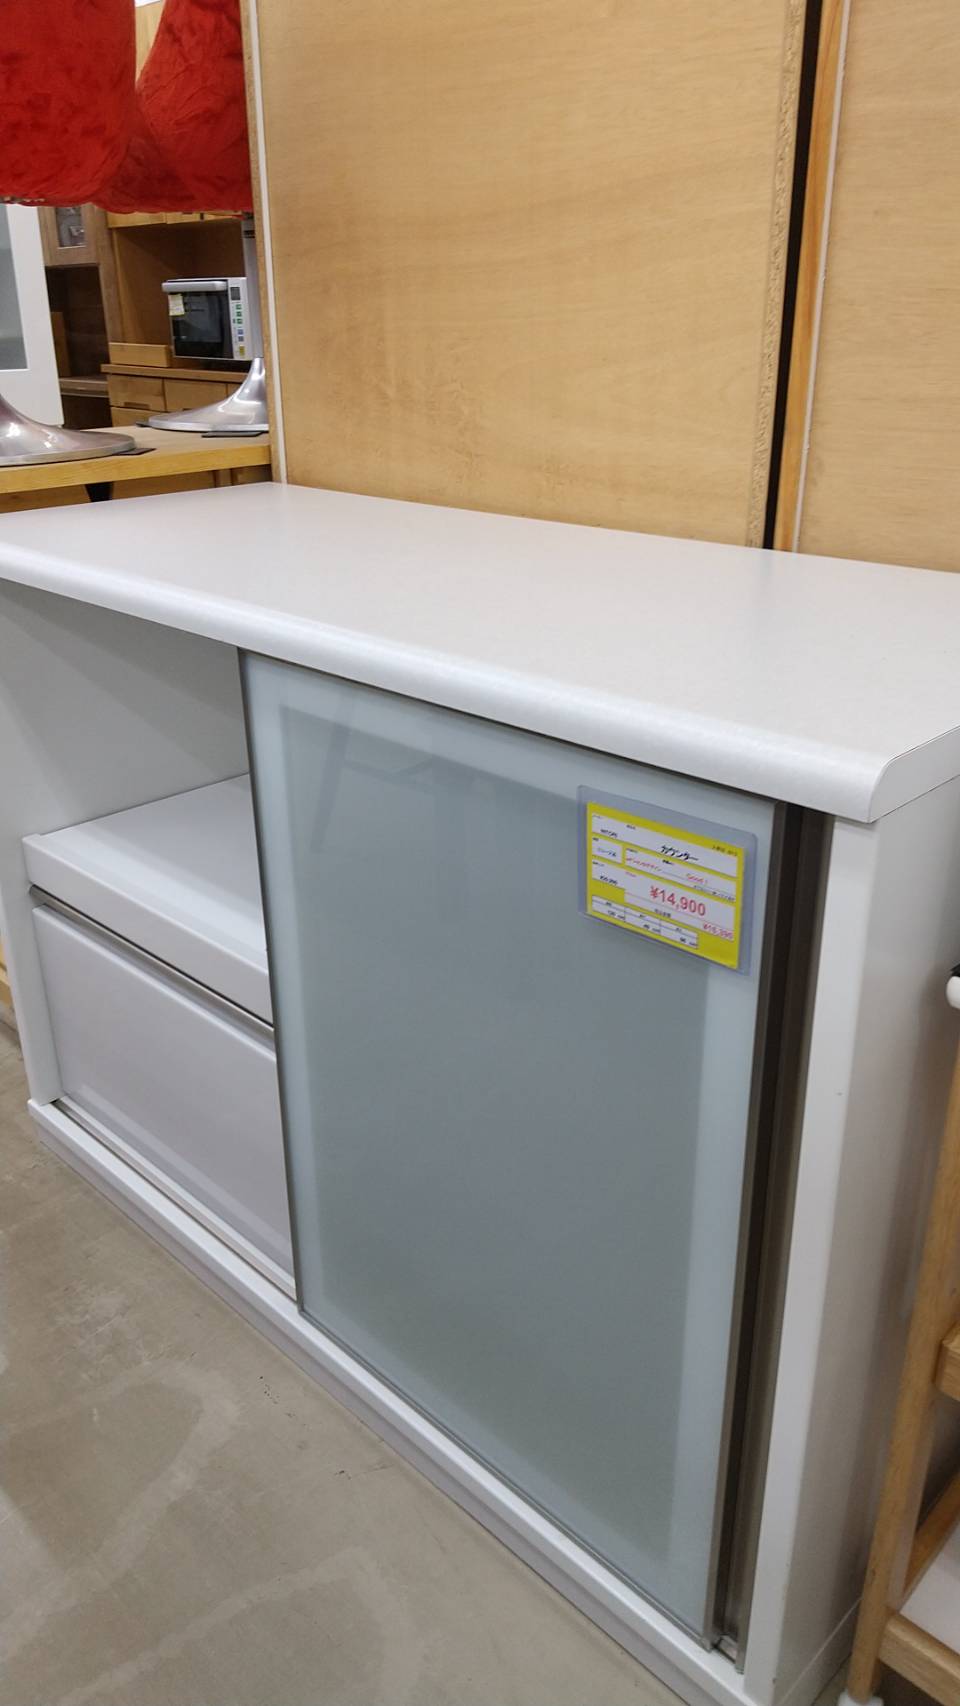 【NITORI ニトリ キッチンカウンター 食器棚 120cm×49cm×86cm】を買取いたしました！ - リサイクルマートは現在冷蔵庫の買取、家具の買取強化中です！お気軽にお問い合わせください。